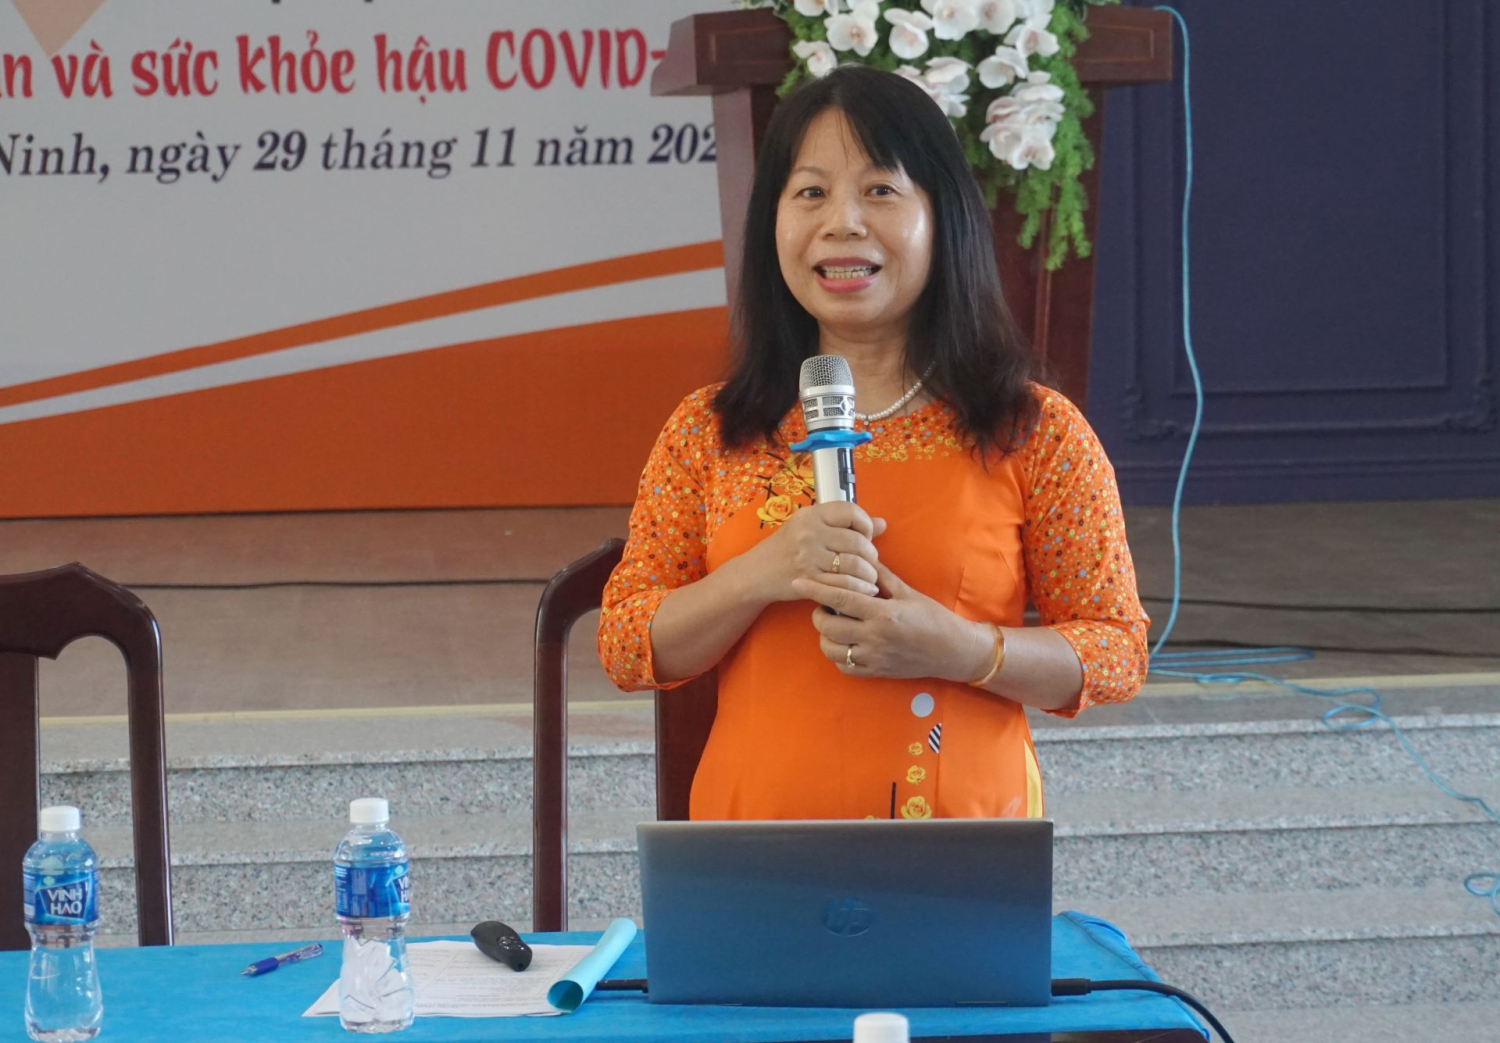 Thạc sĩ, bác sĩ Lương Thị Thuận trình bày chuyên đề tại toạ đàm.